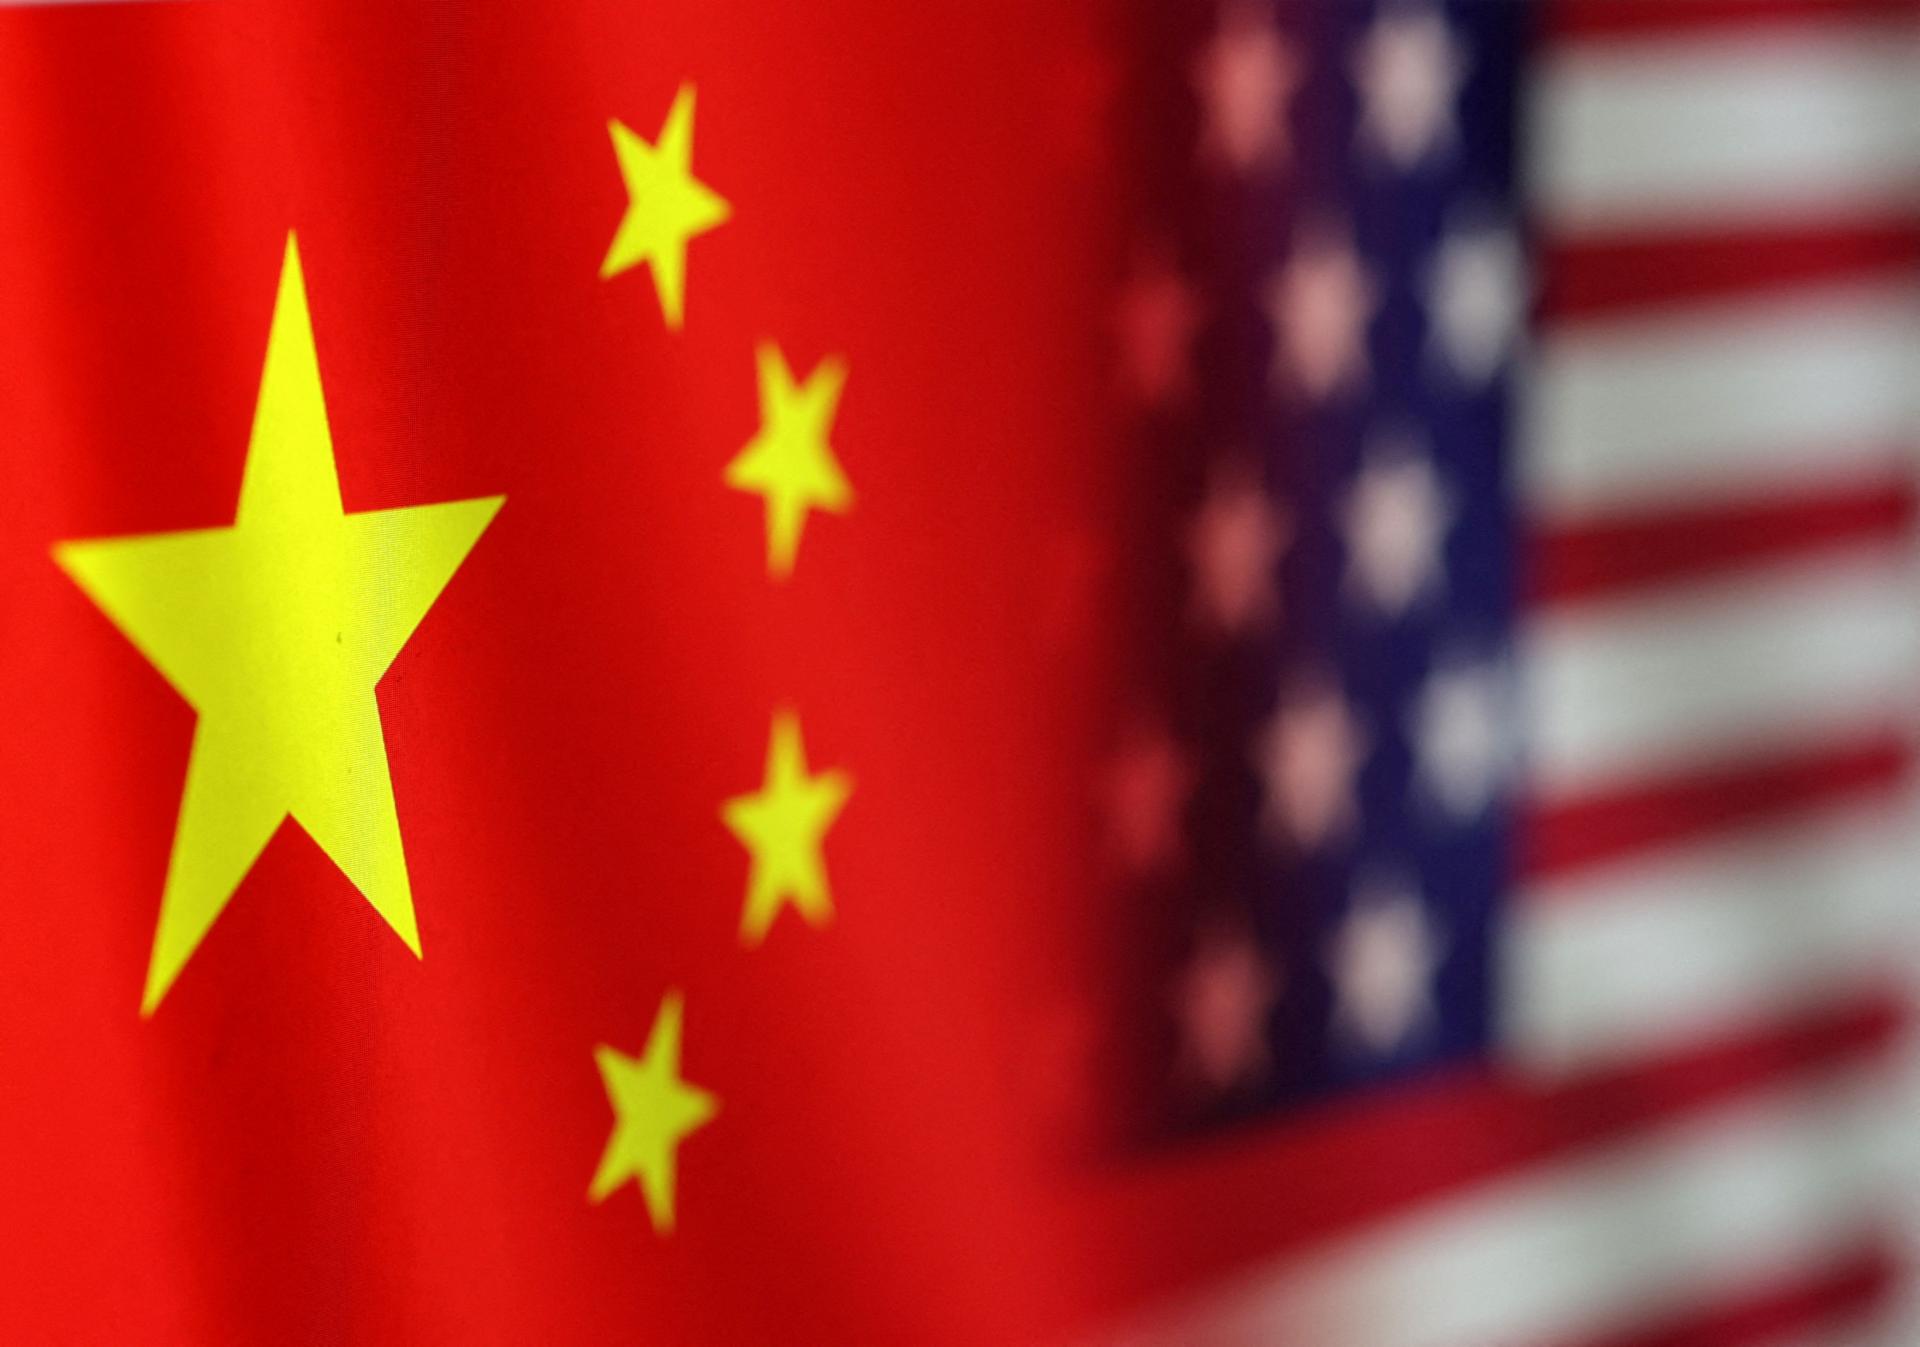 Čína reaguje na správy o možnej návšteve taiwanskej prezidentky v USA. Washington dôrazne varovala